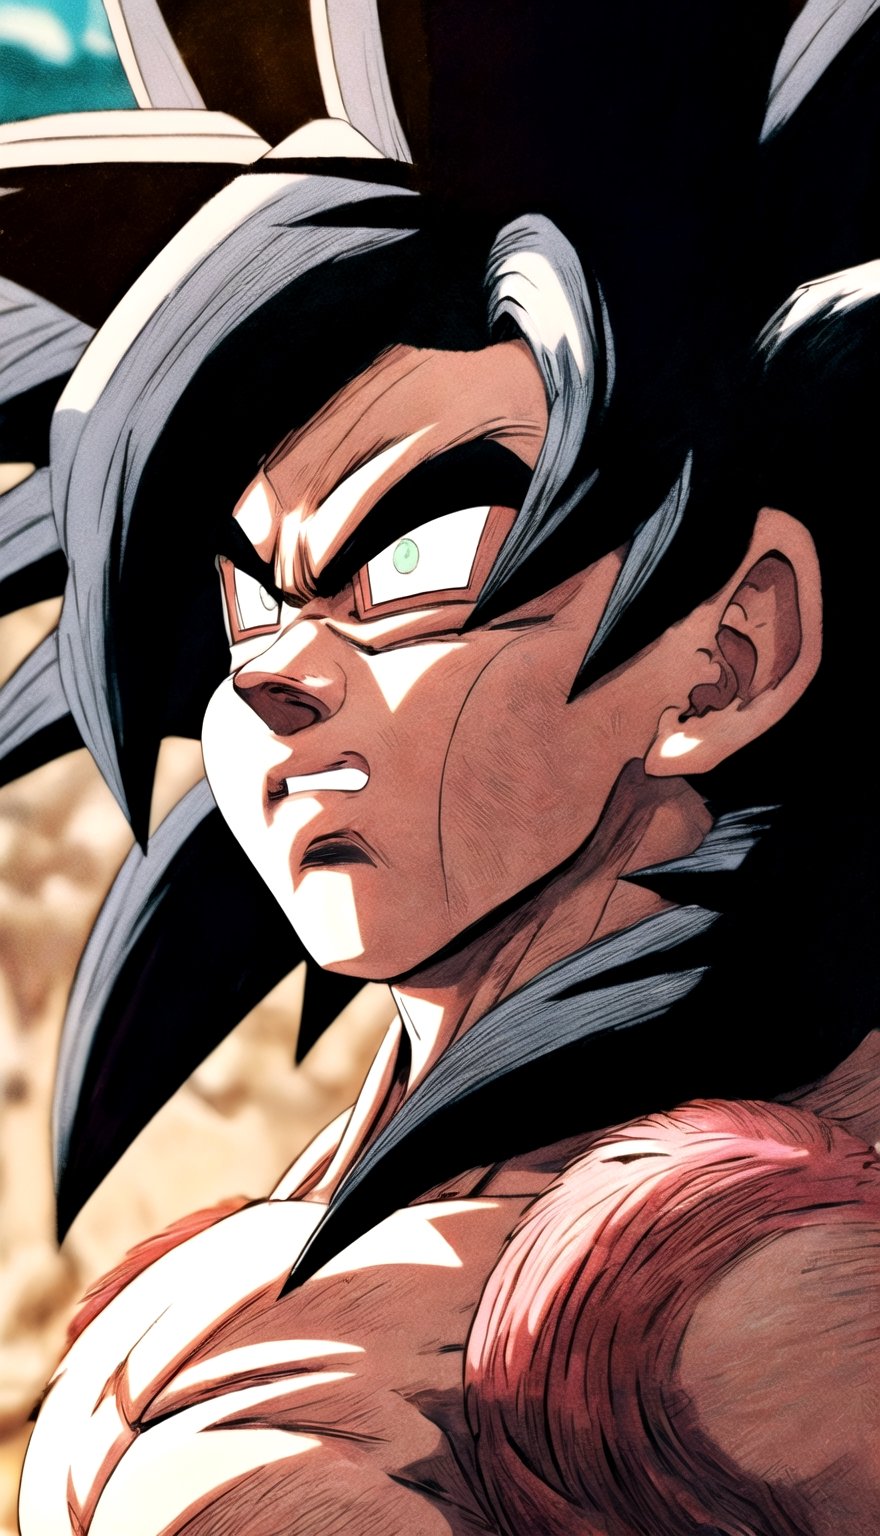 Super Saiyan 4 Goku (Dragon Ball) - v1.0